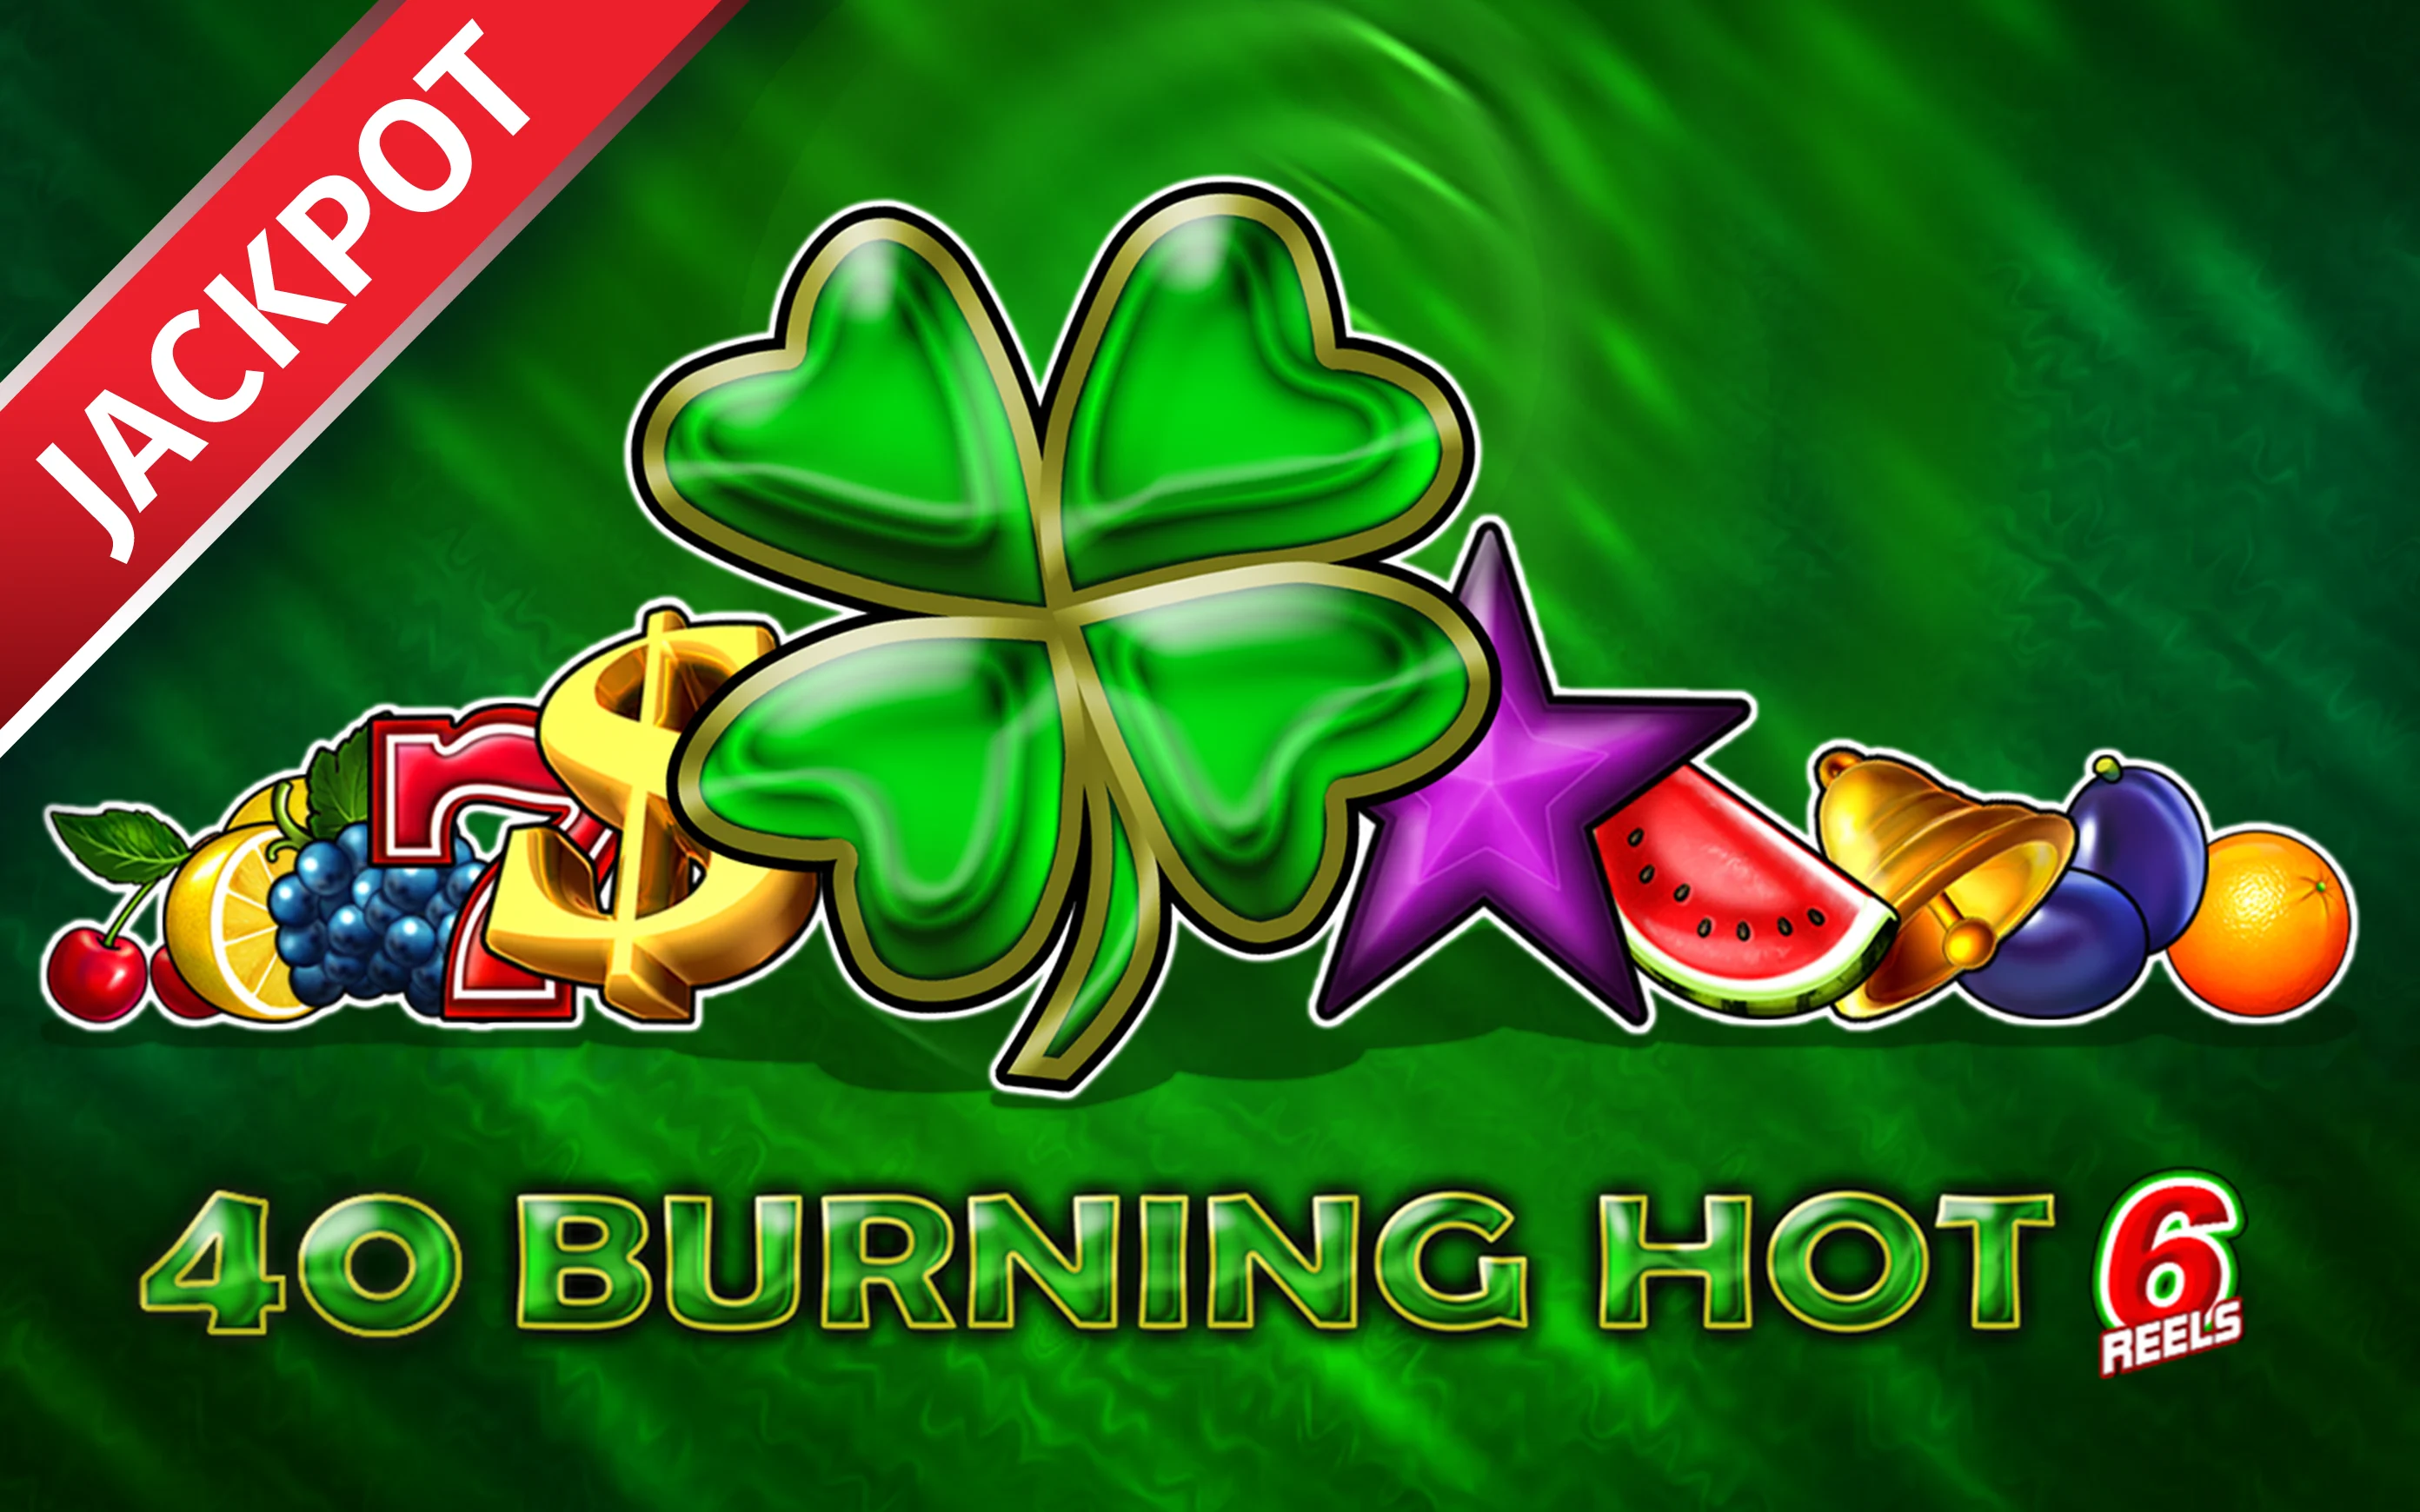 Juega a 40 Burning Hot 6 Reels en el casino en línea de Starcasino.be